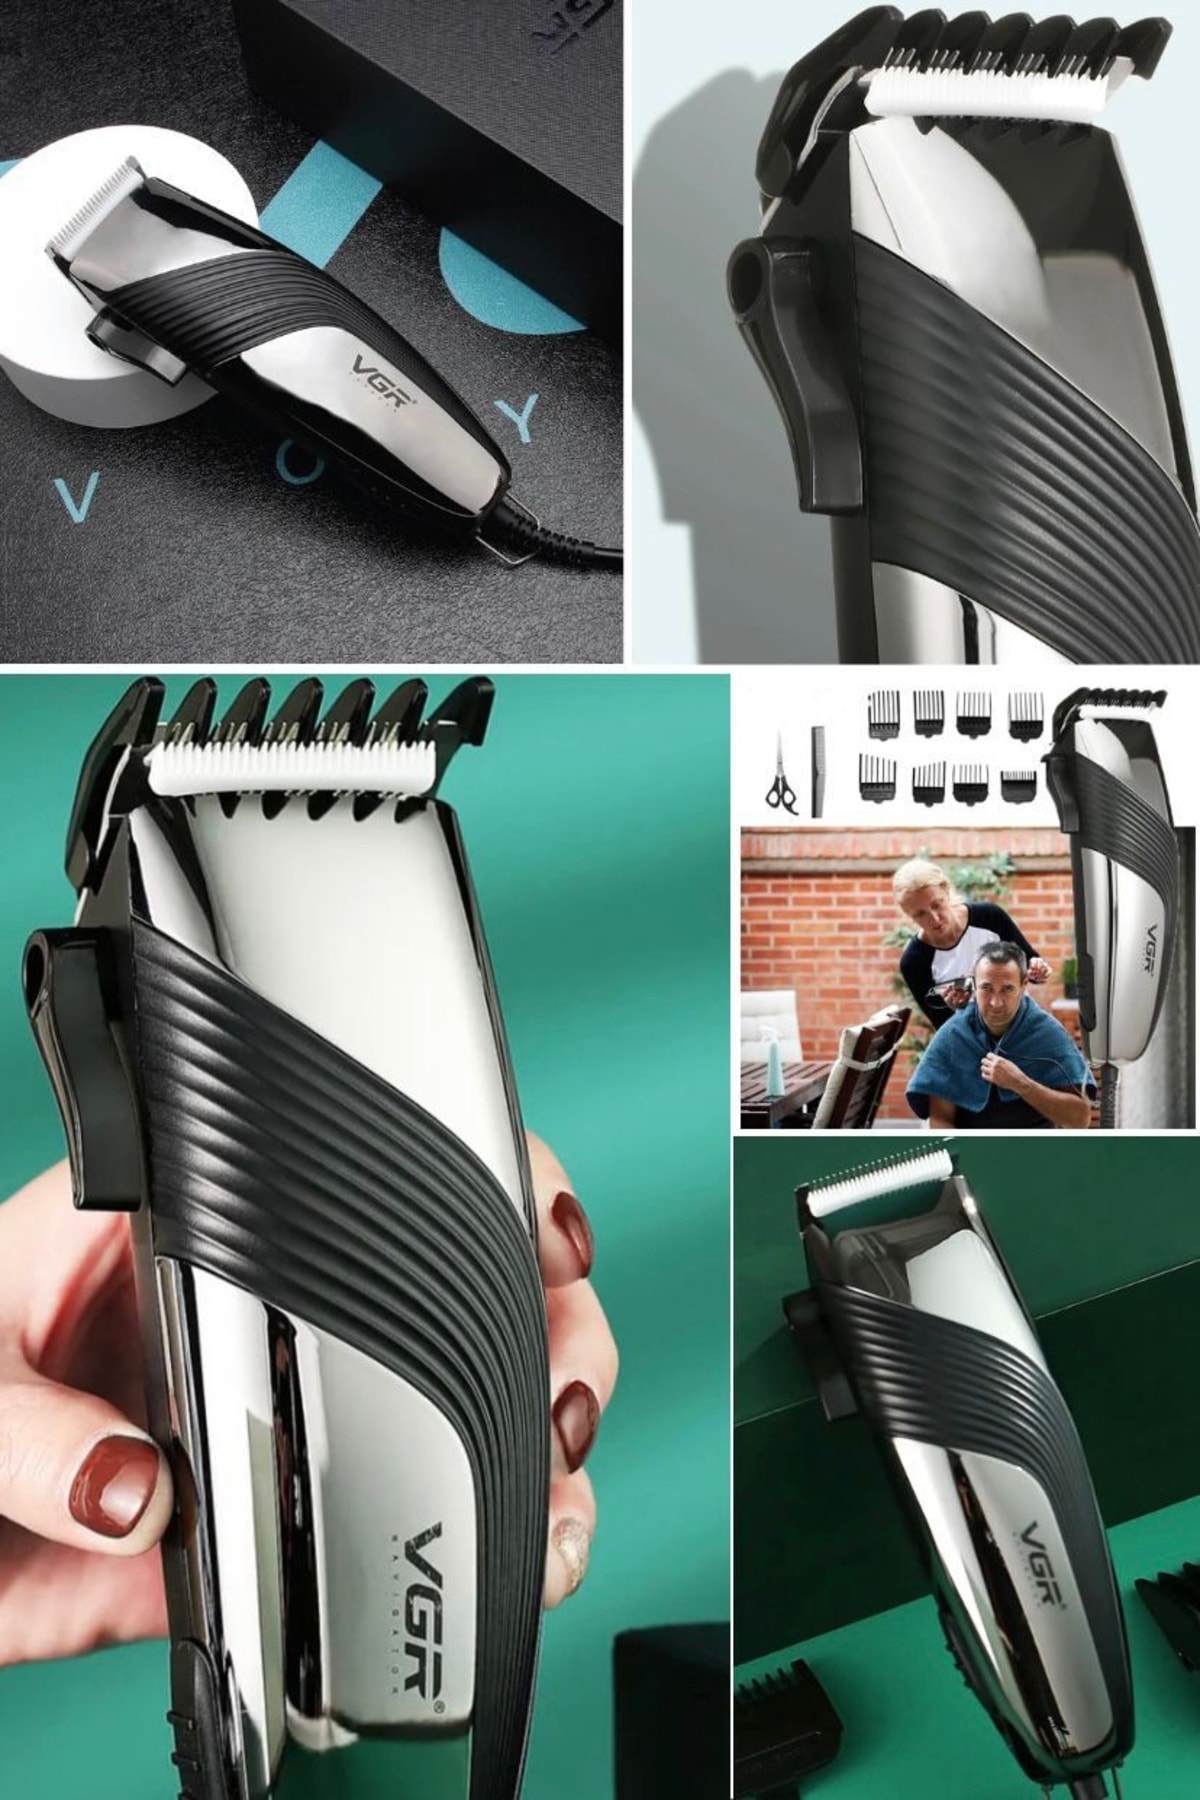 Utelips Saç Düzeltici Ev Saç Kesim Makinesi Erkekler Için Kablolu Kesme Makinesi Tıraş Makinesi Seti Kalite